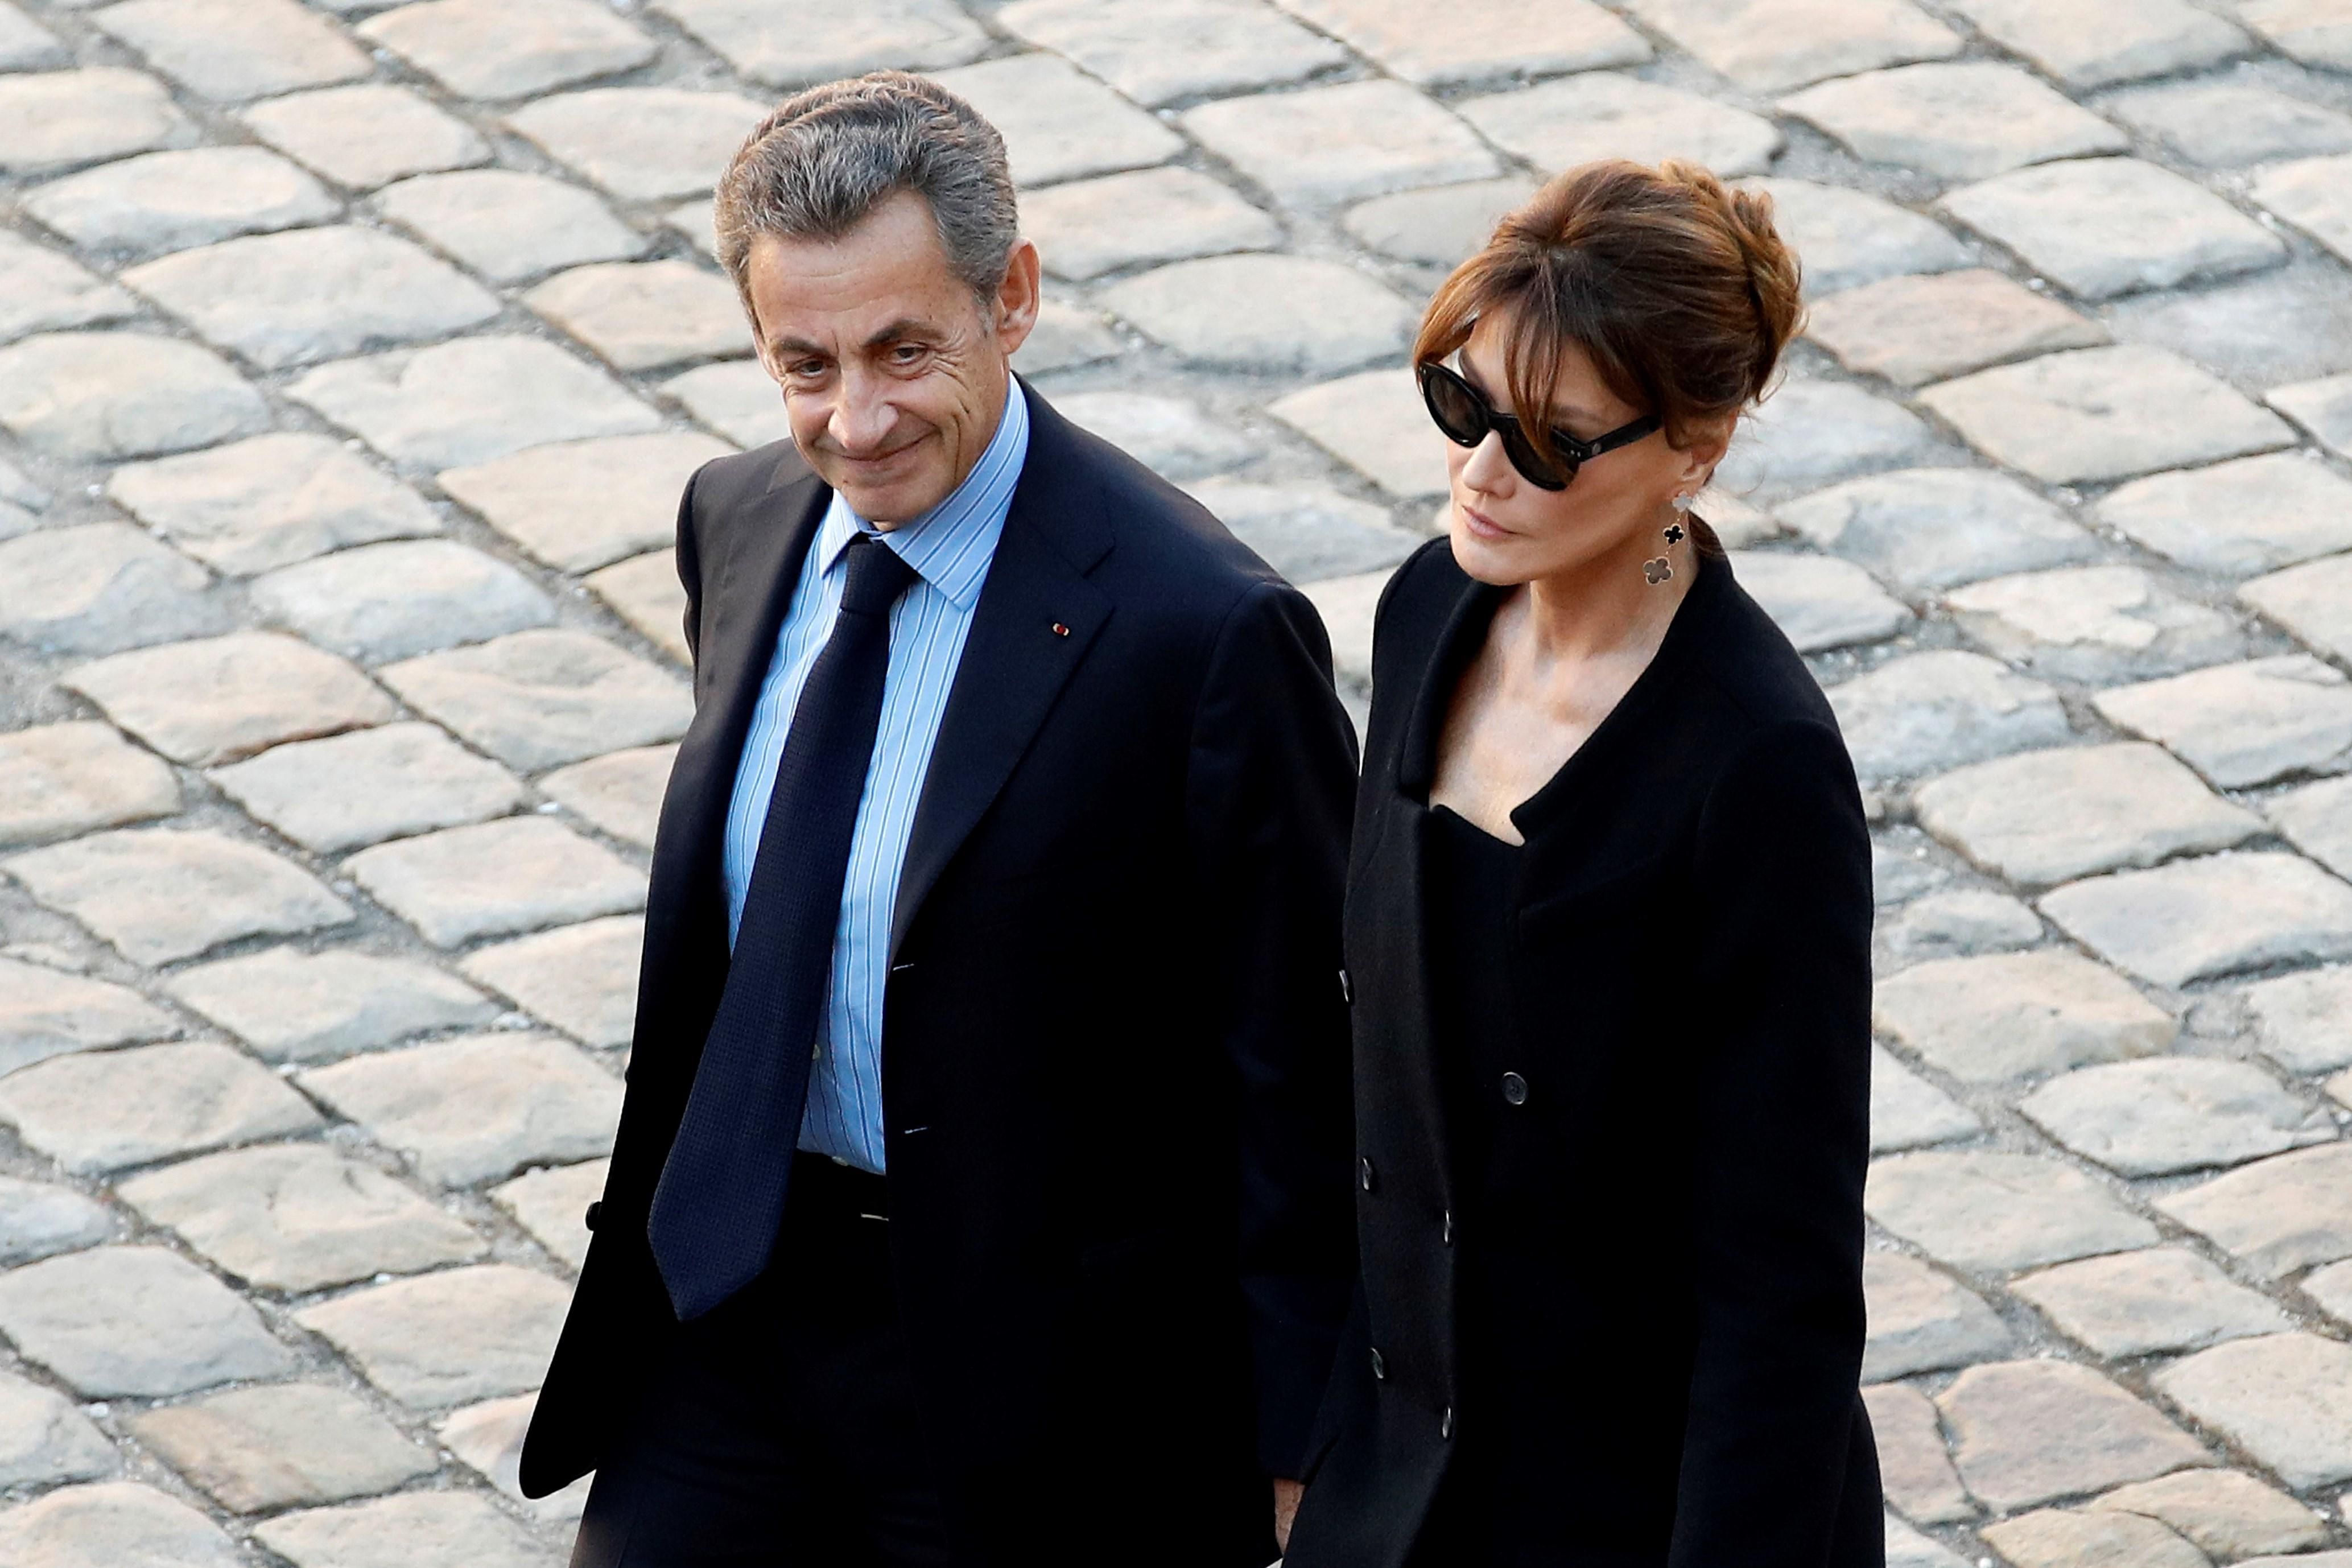 interrogan a modelo carla bruni en francia; es sospechosa en pesquisa contra su esposo, el expresidente sarkozy